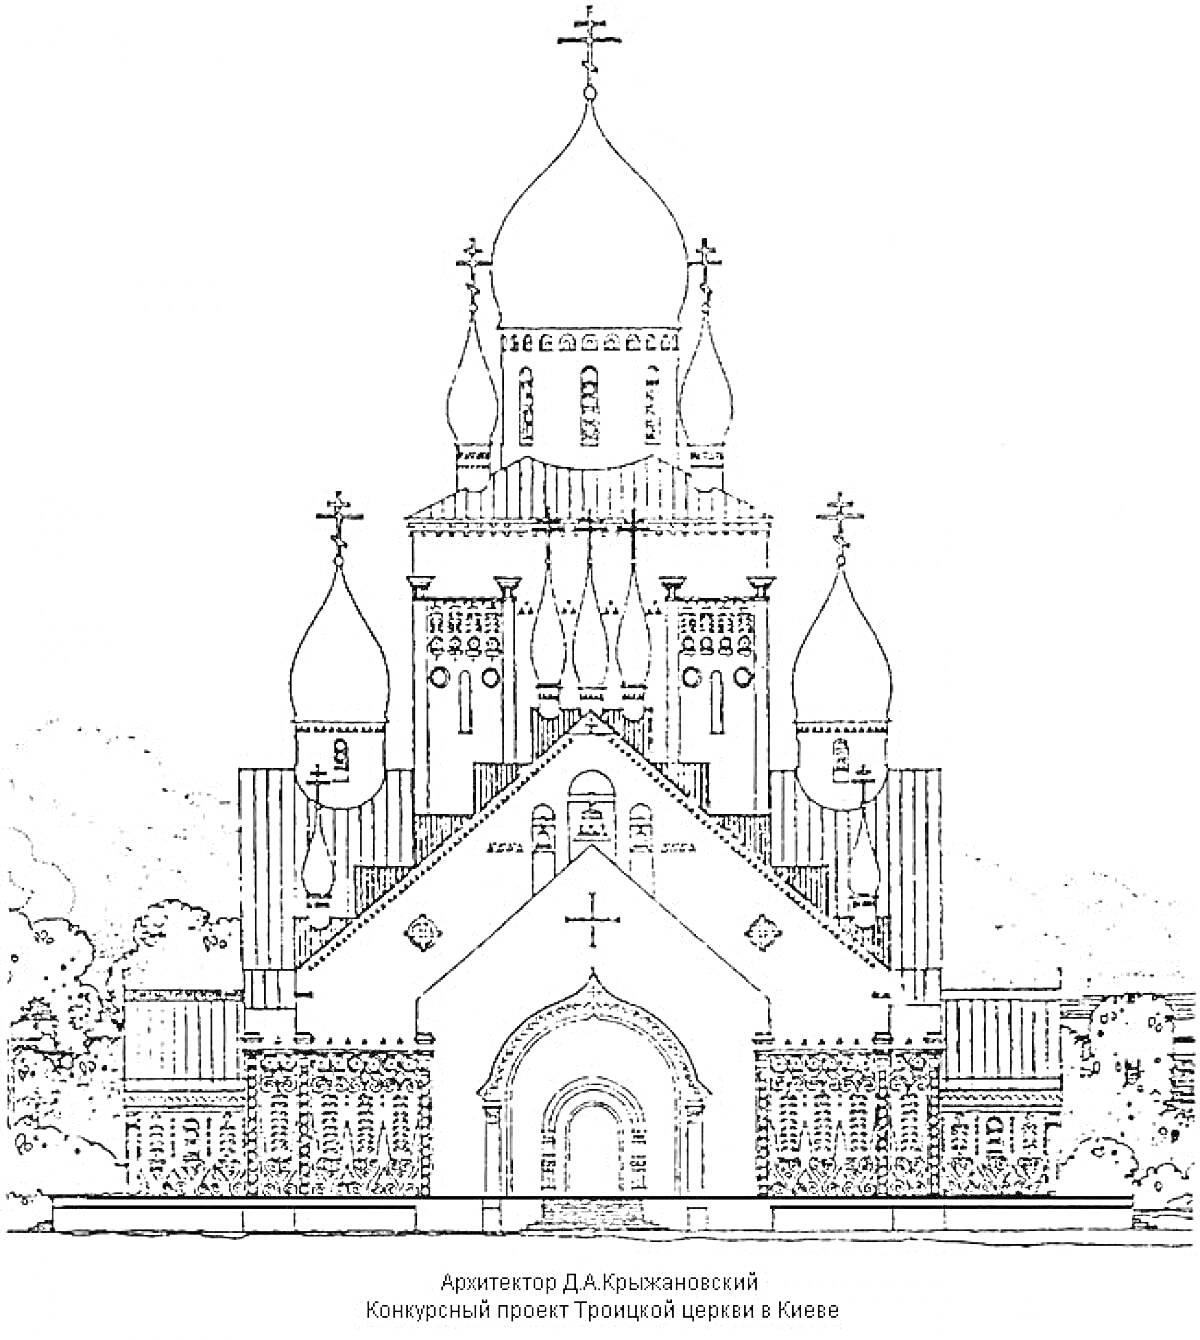 Раскраска Храм с пятью куполами и крестами, арочным входом, тремя арочными окнами над входом и боковыми башнями